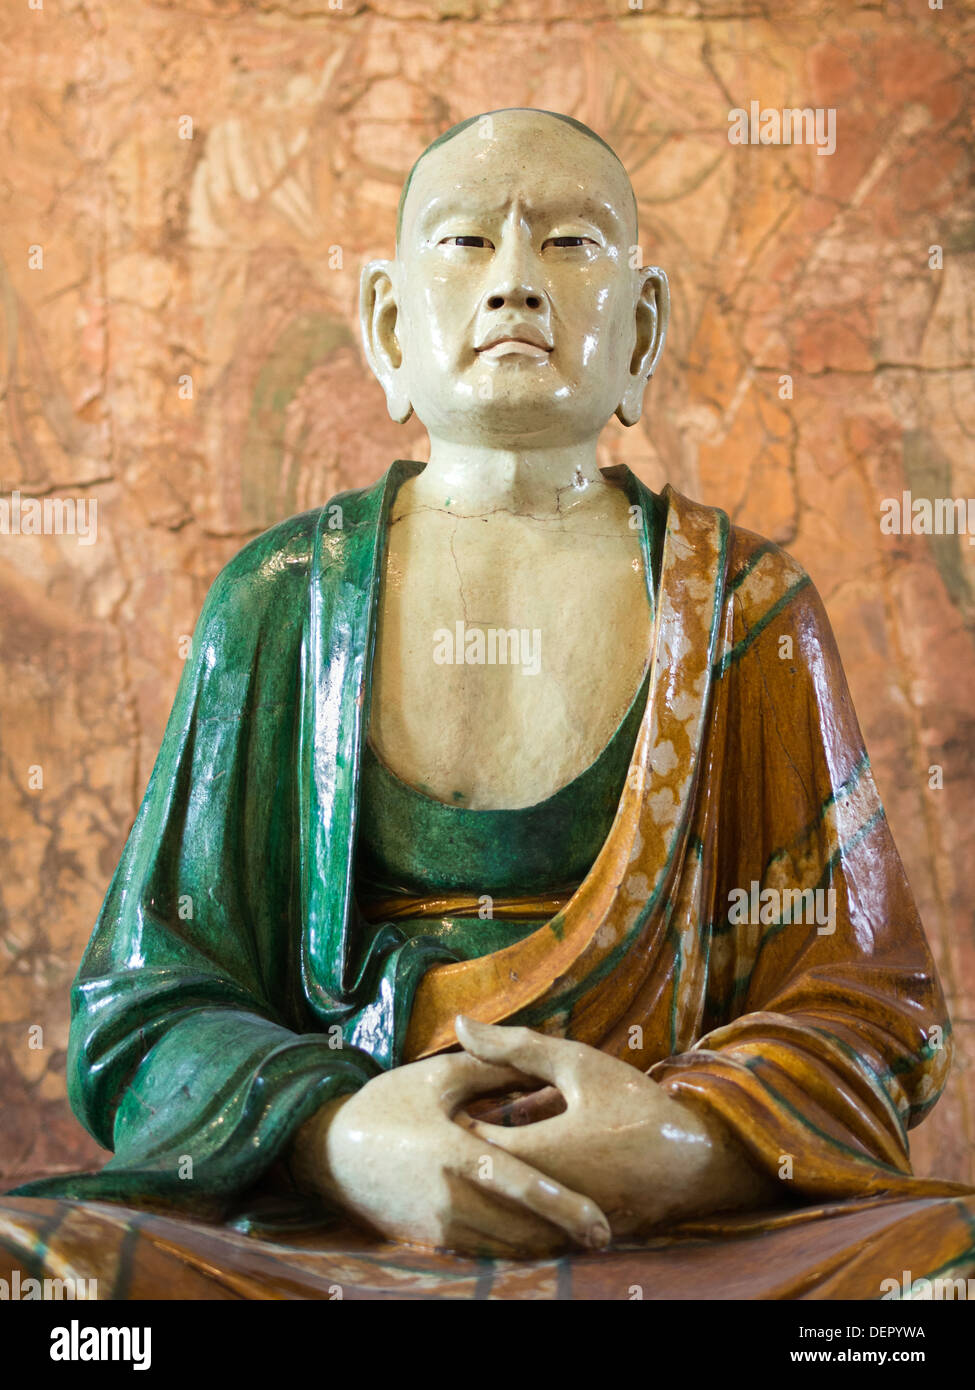 Le British Museum, Londres - céramique grès chinois figure d'une dynastie Liao Luohan bouddhiste 4 Banque D'Images